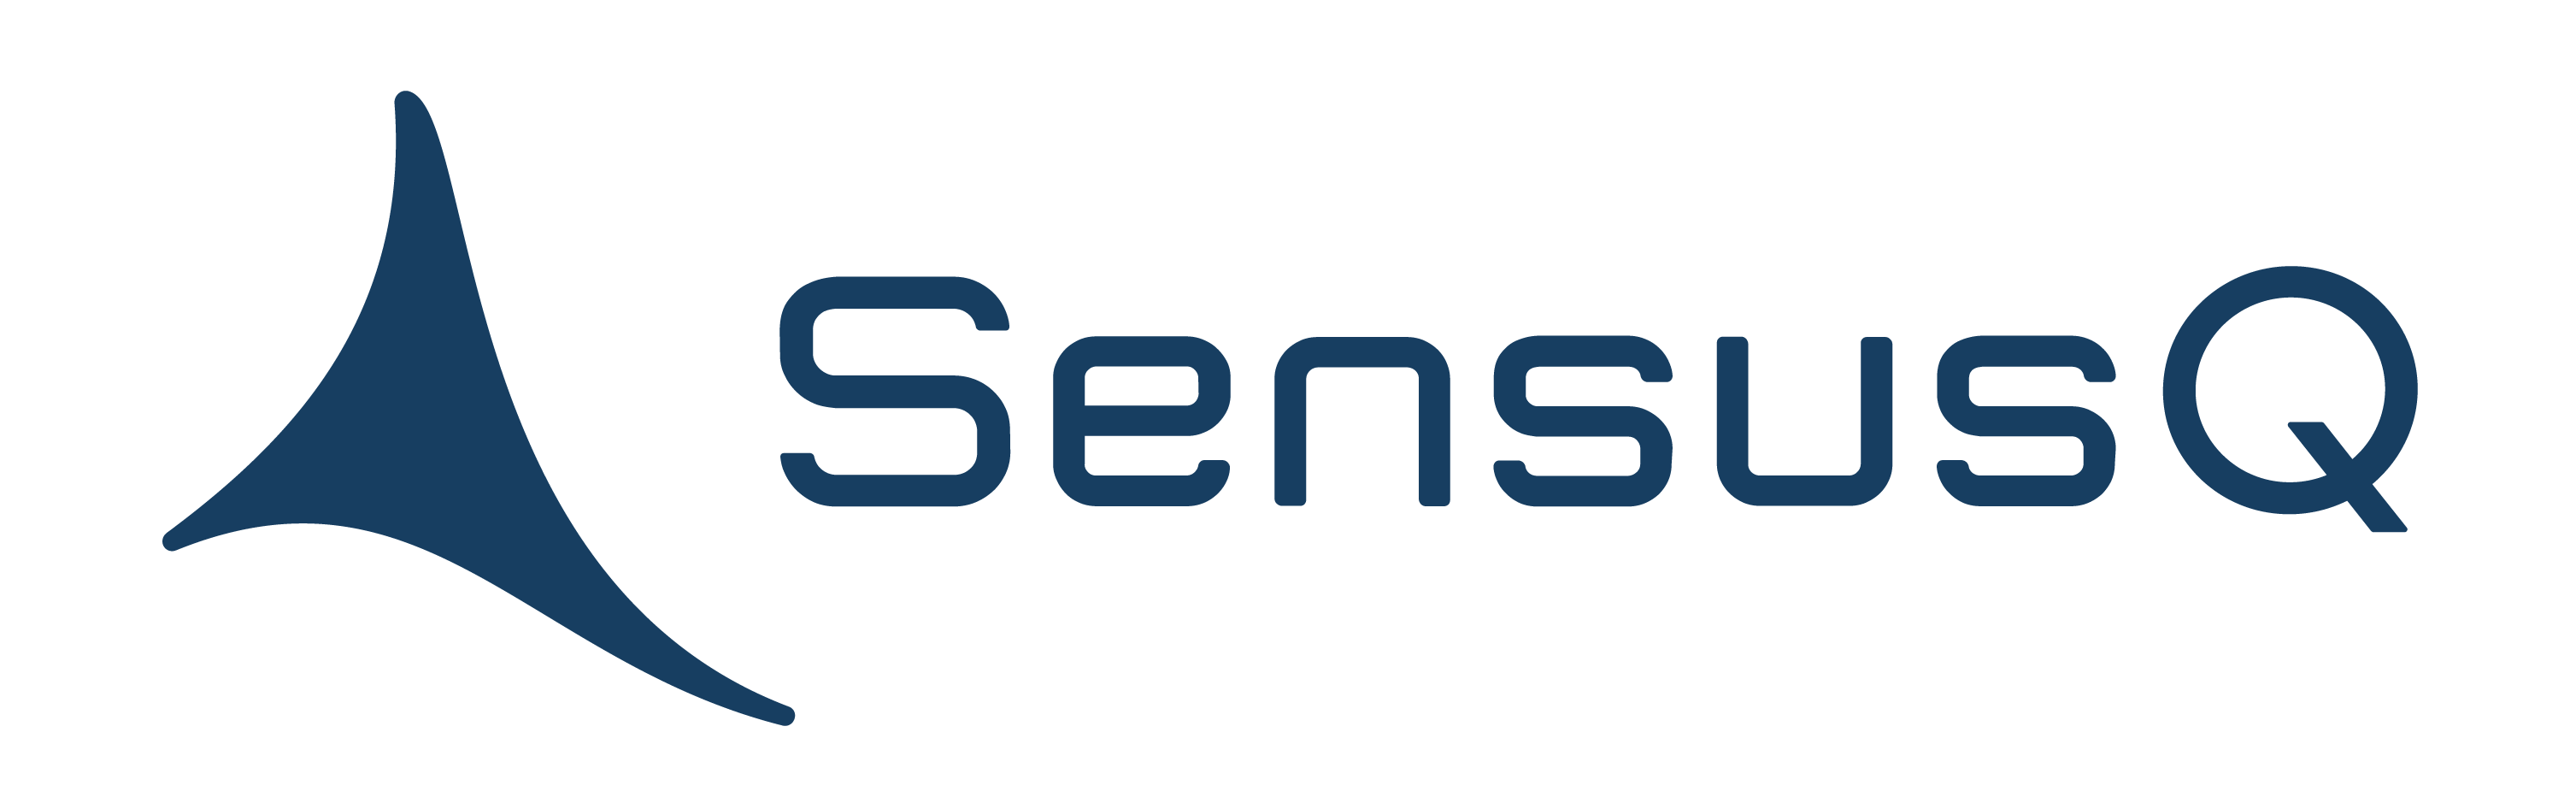 Sensusq logo vector_SensusQ blue transparent